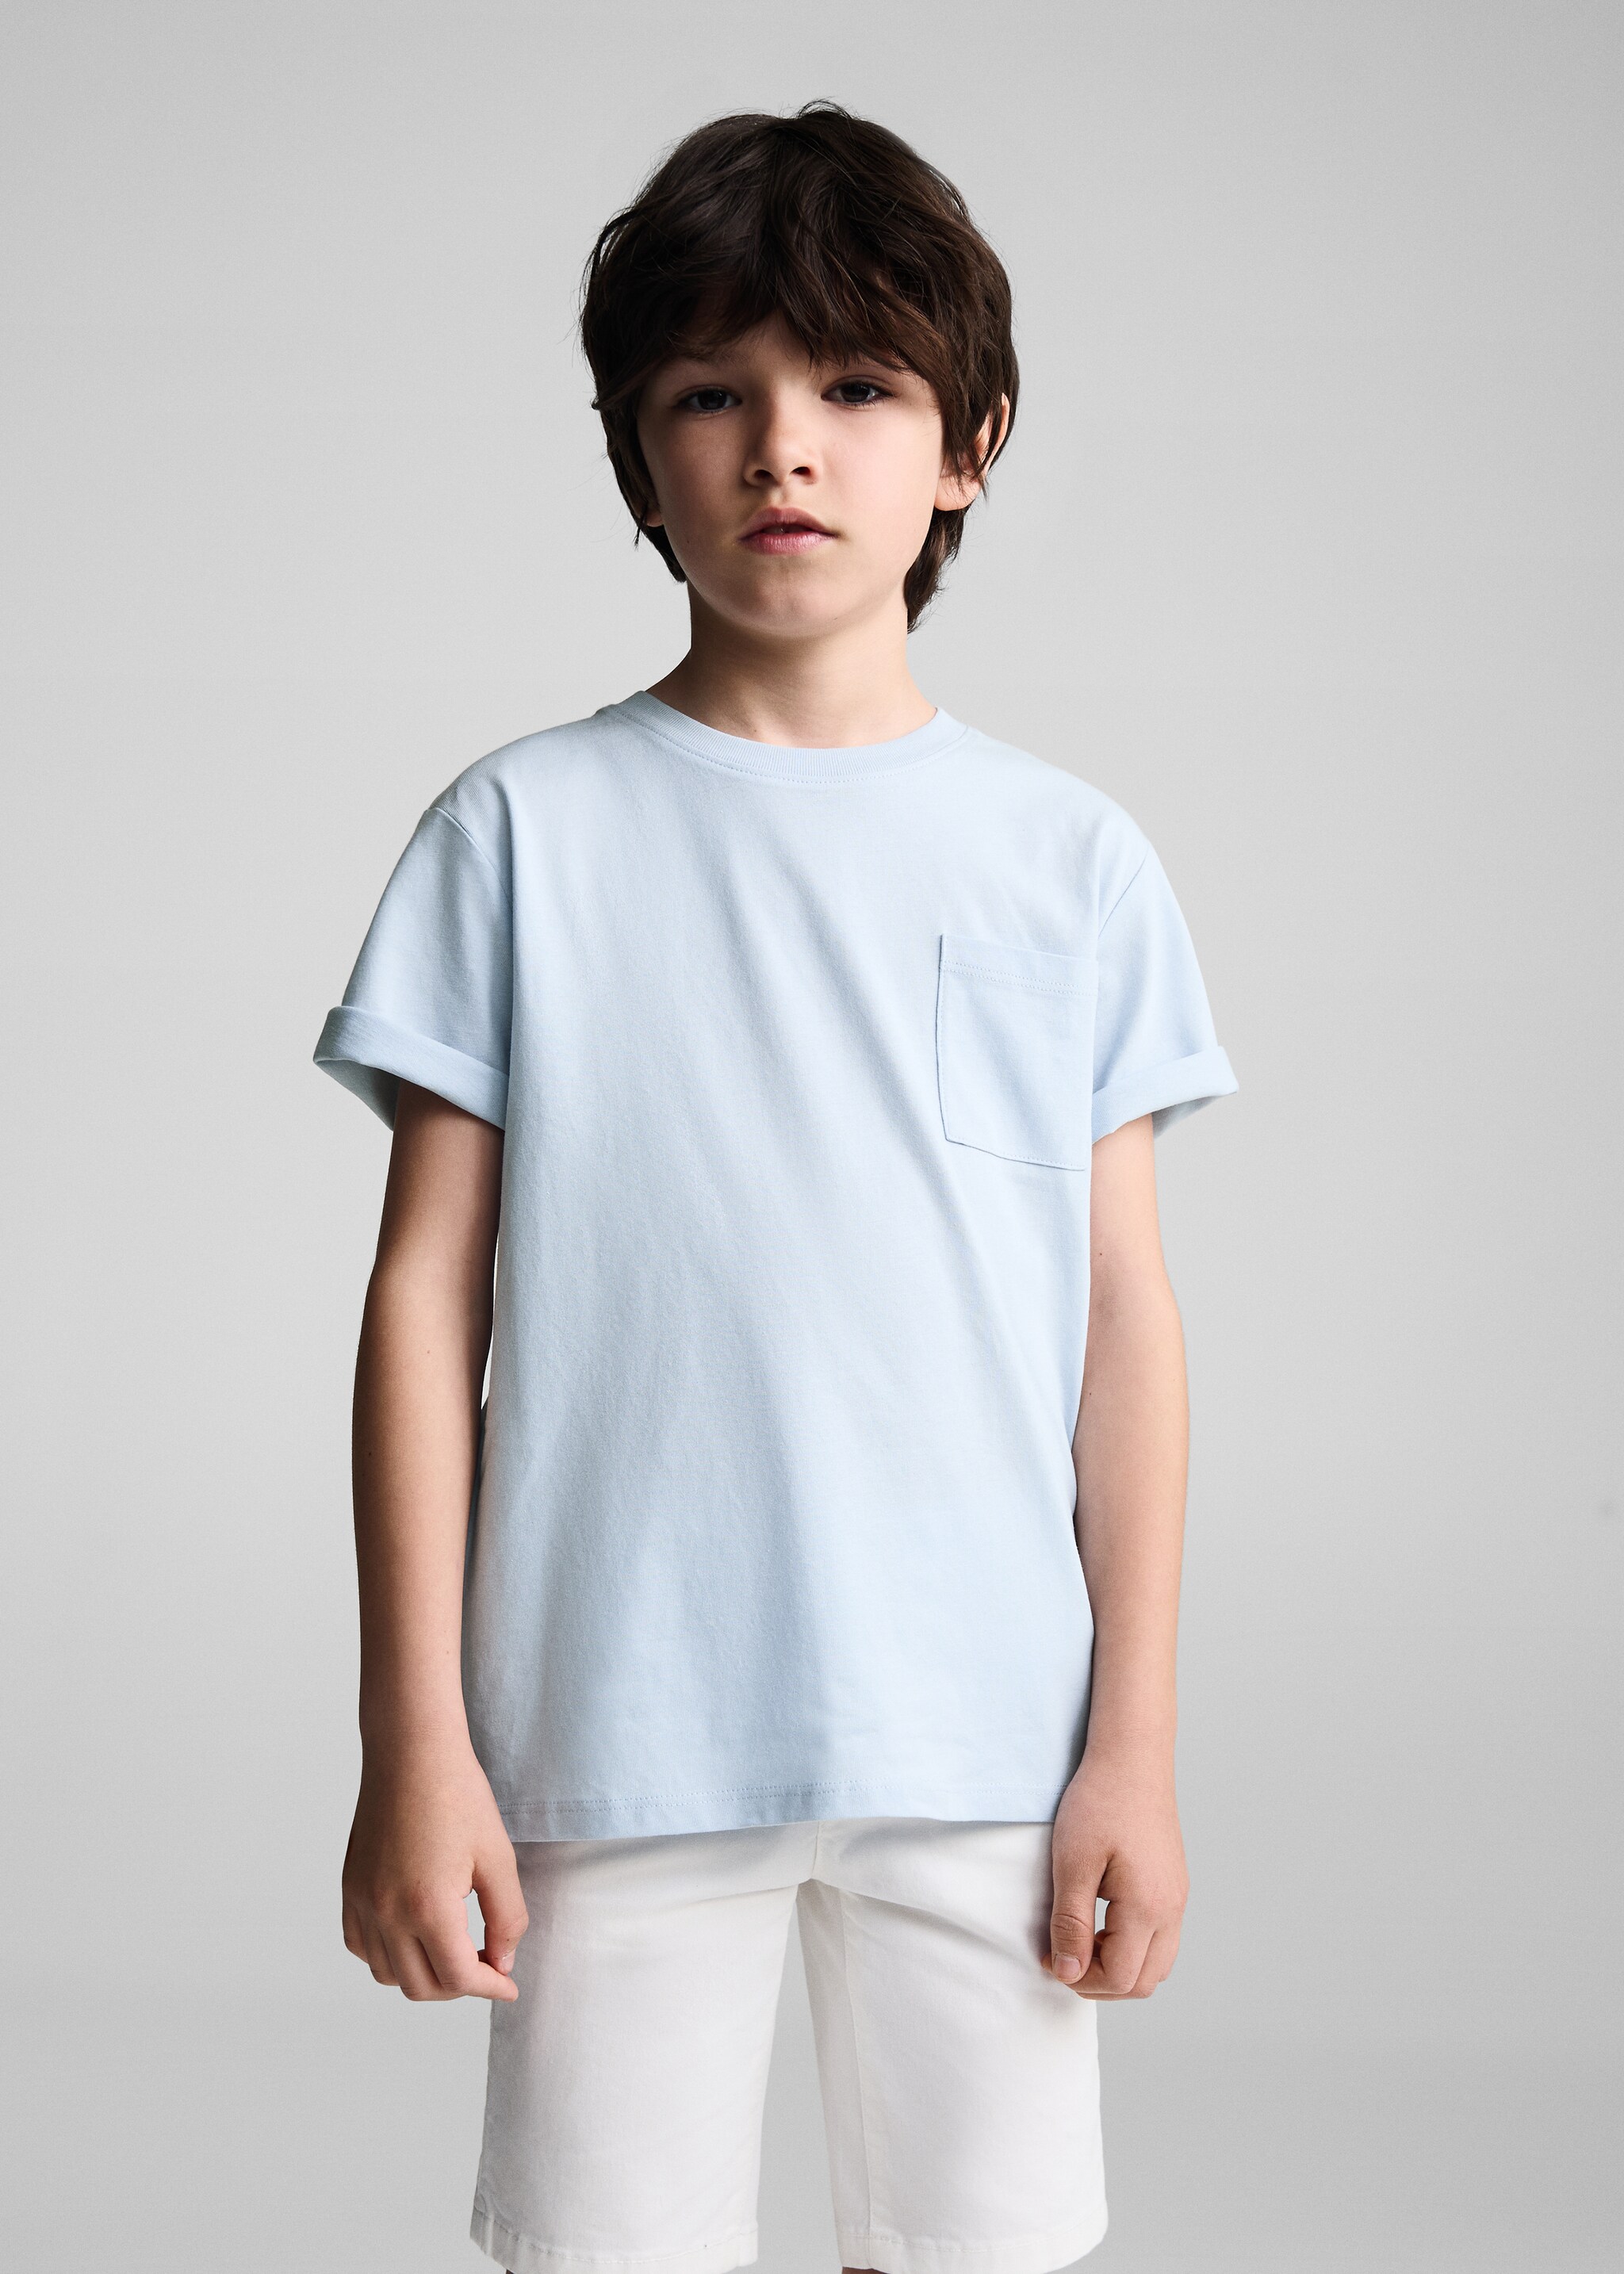 T-shirt básica algodão - Plano médio